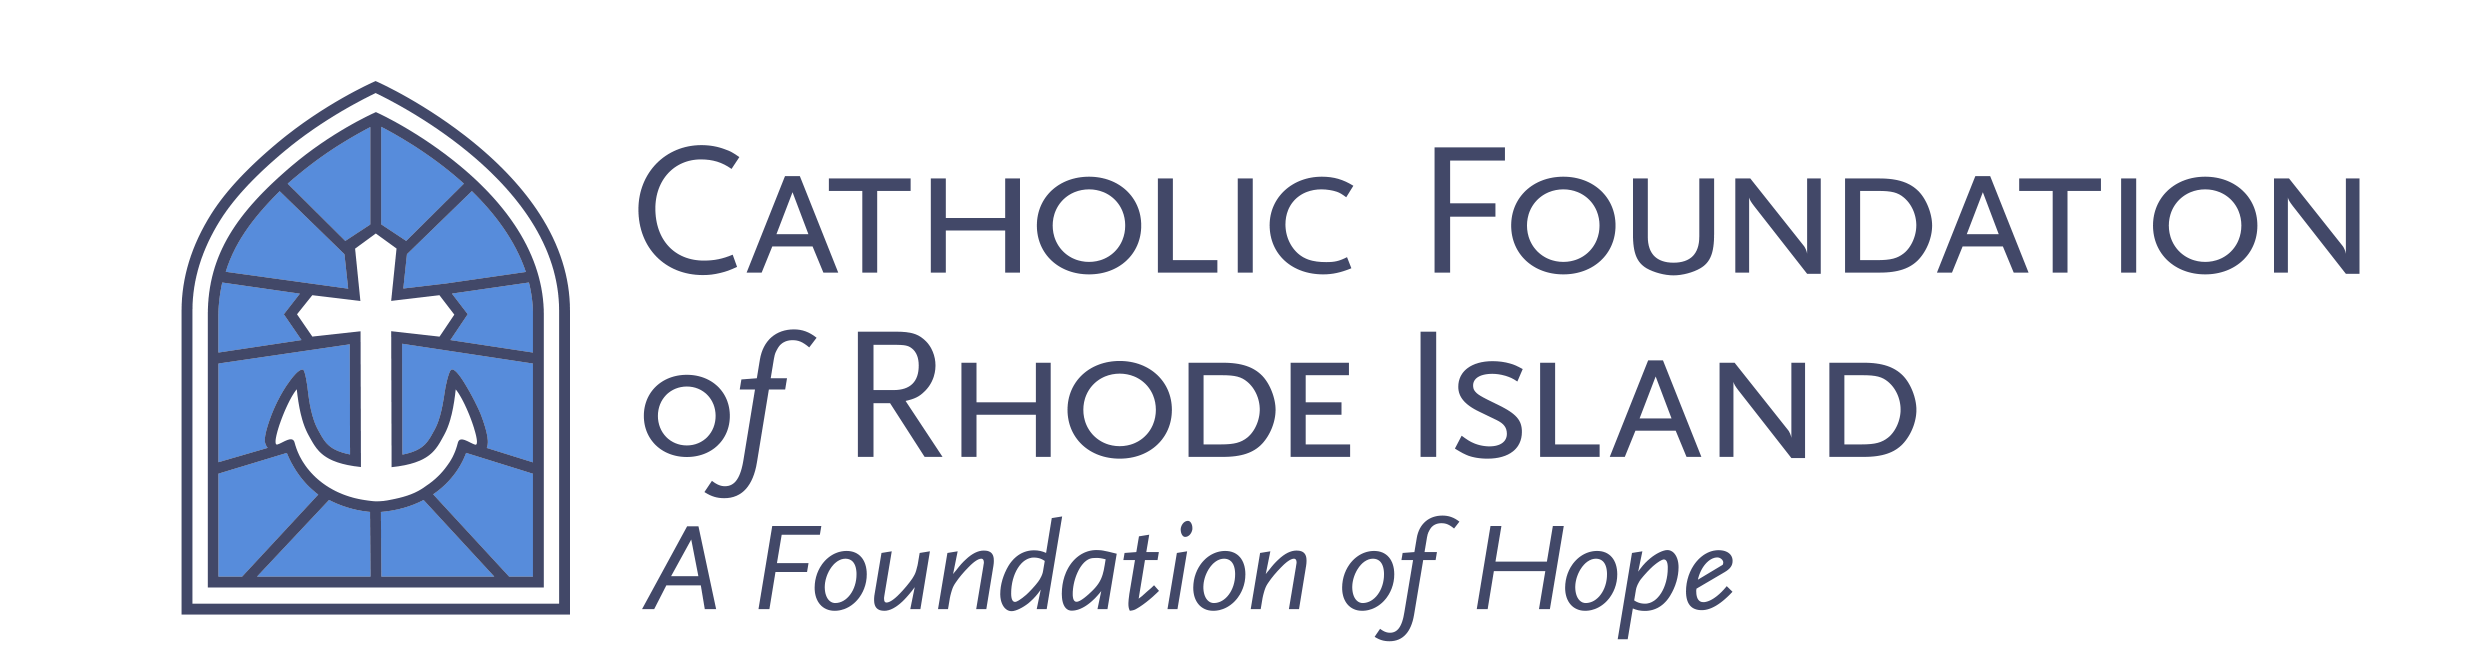 the Catholic Foundation of Rhode Island